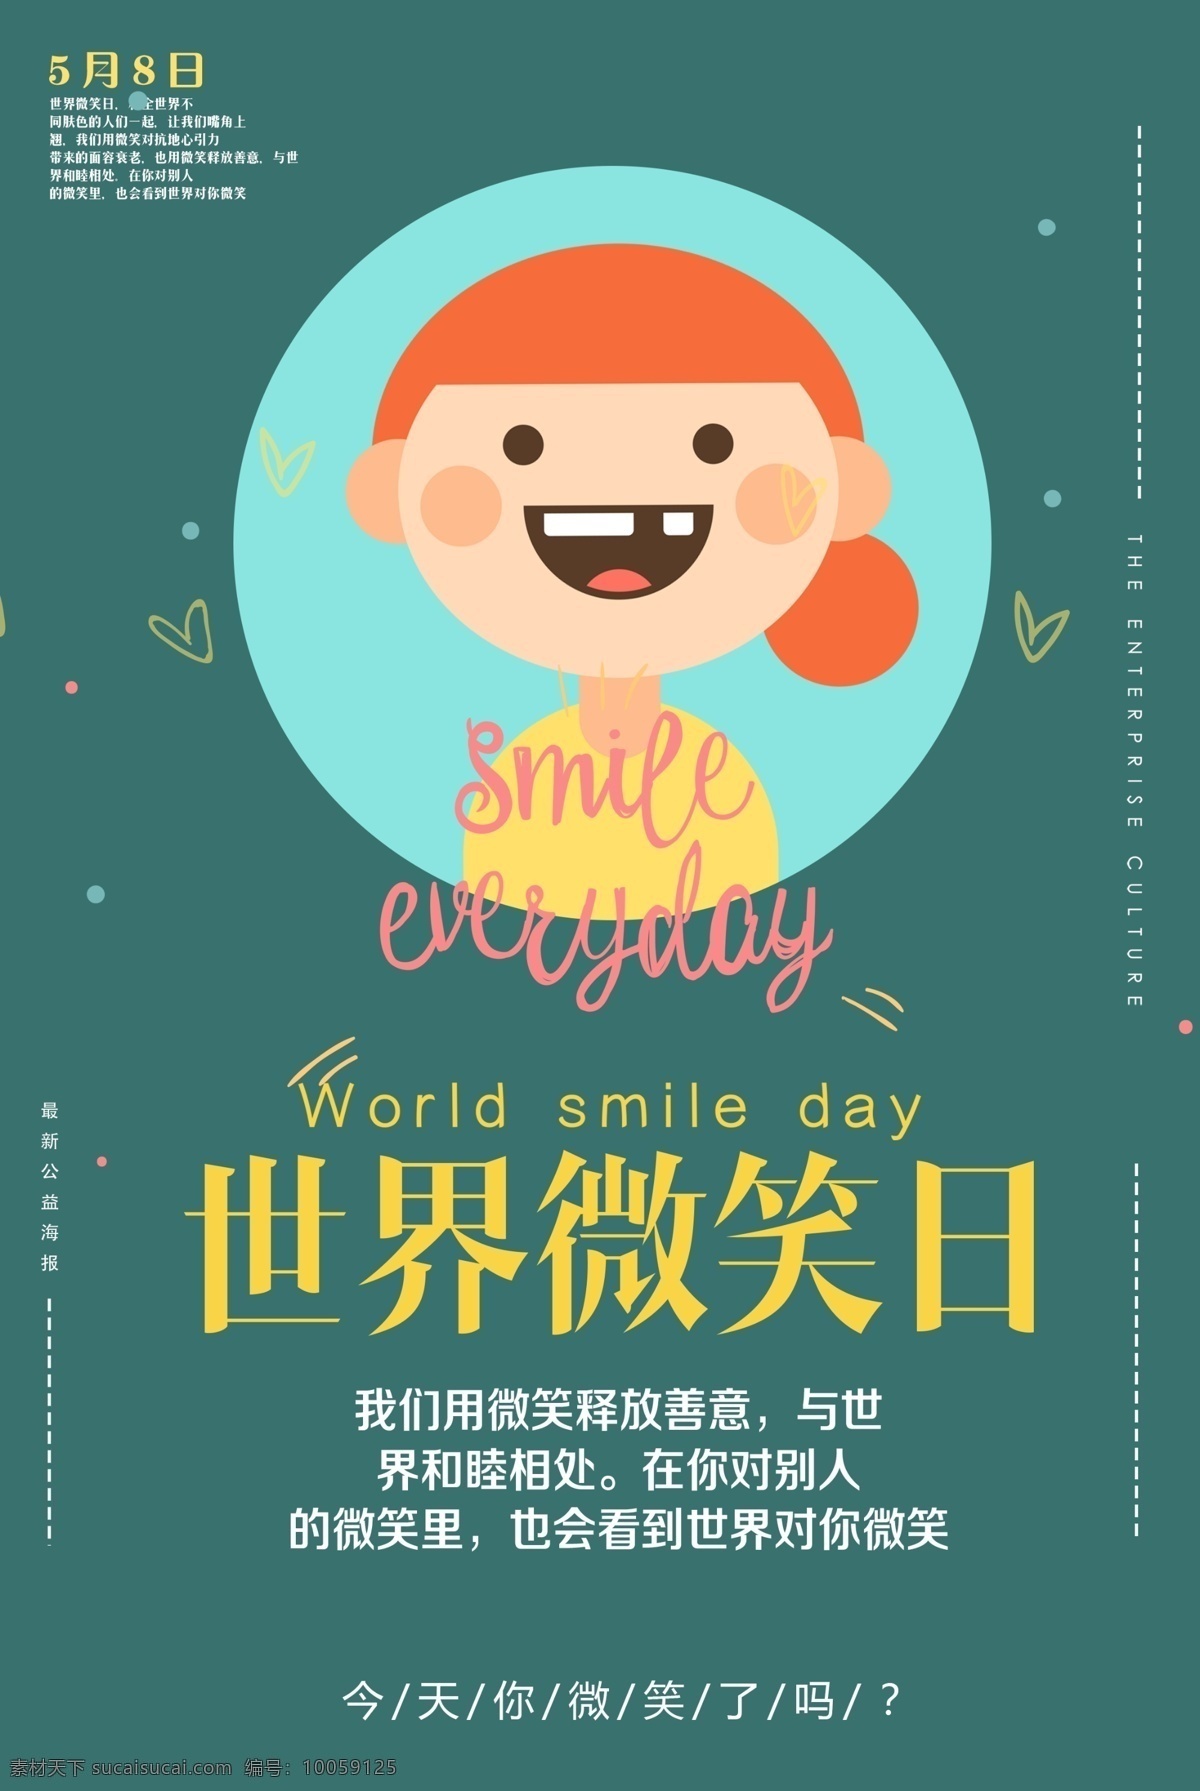 蓝色 卡通 世界 微笑 日 海报 地球 心 医疗 生活 免费海报 微笑之心 帮助 背景 慈善 关怀 国际 环境 捐赠 人 社会 手 支持 社区 组织 希望 世界微笑日